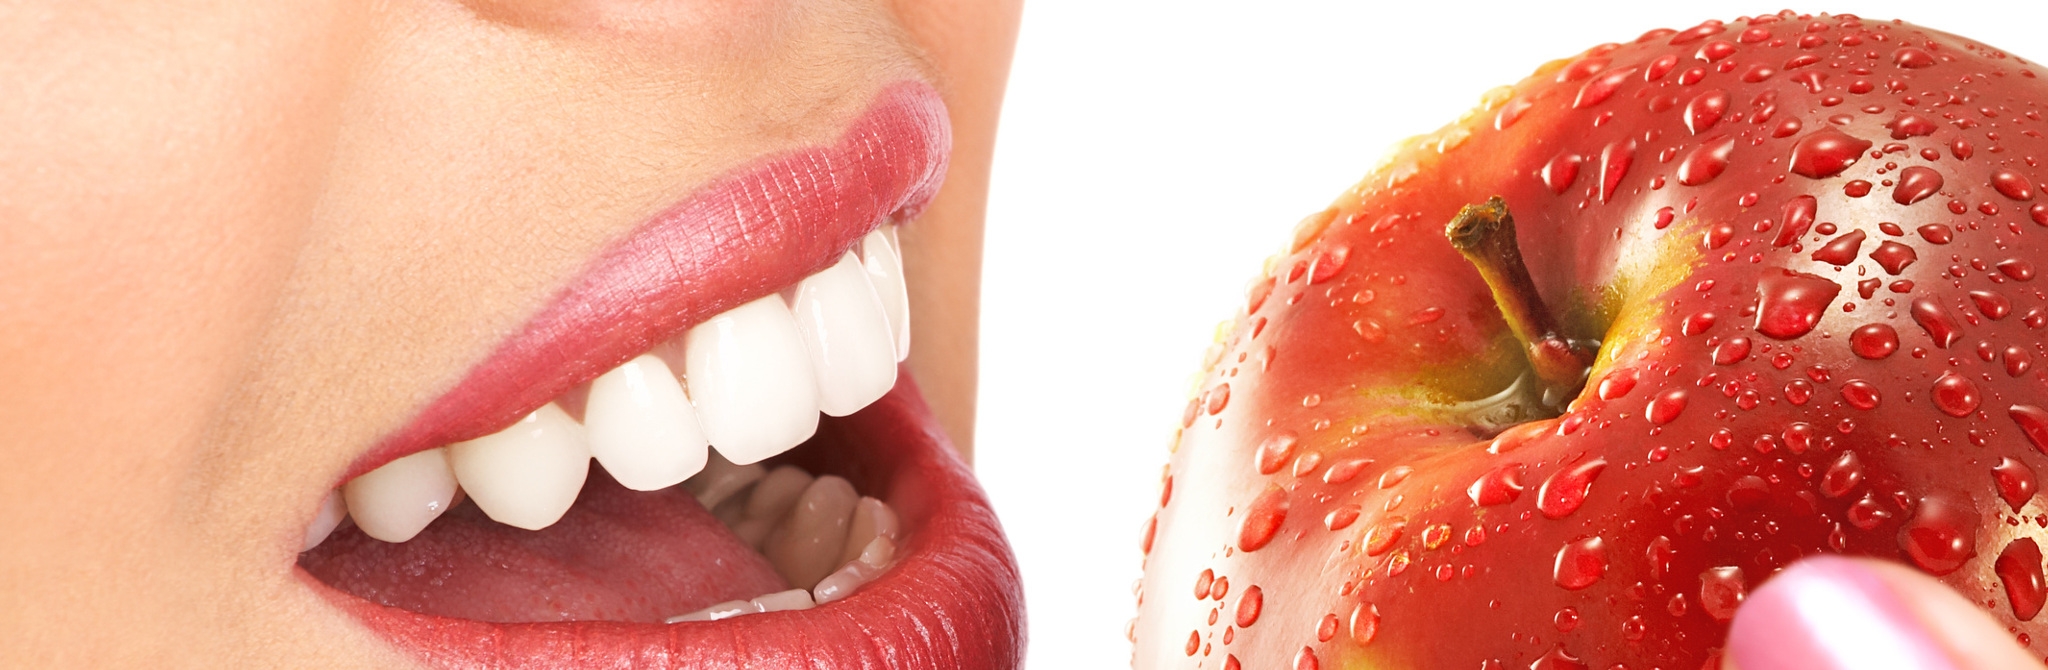 La odontologia de vanguardia